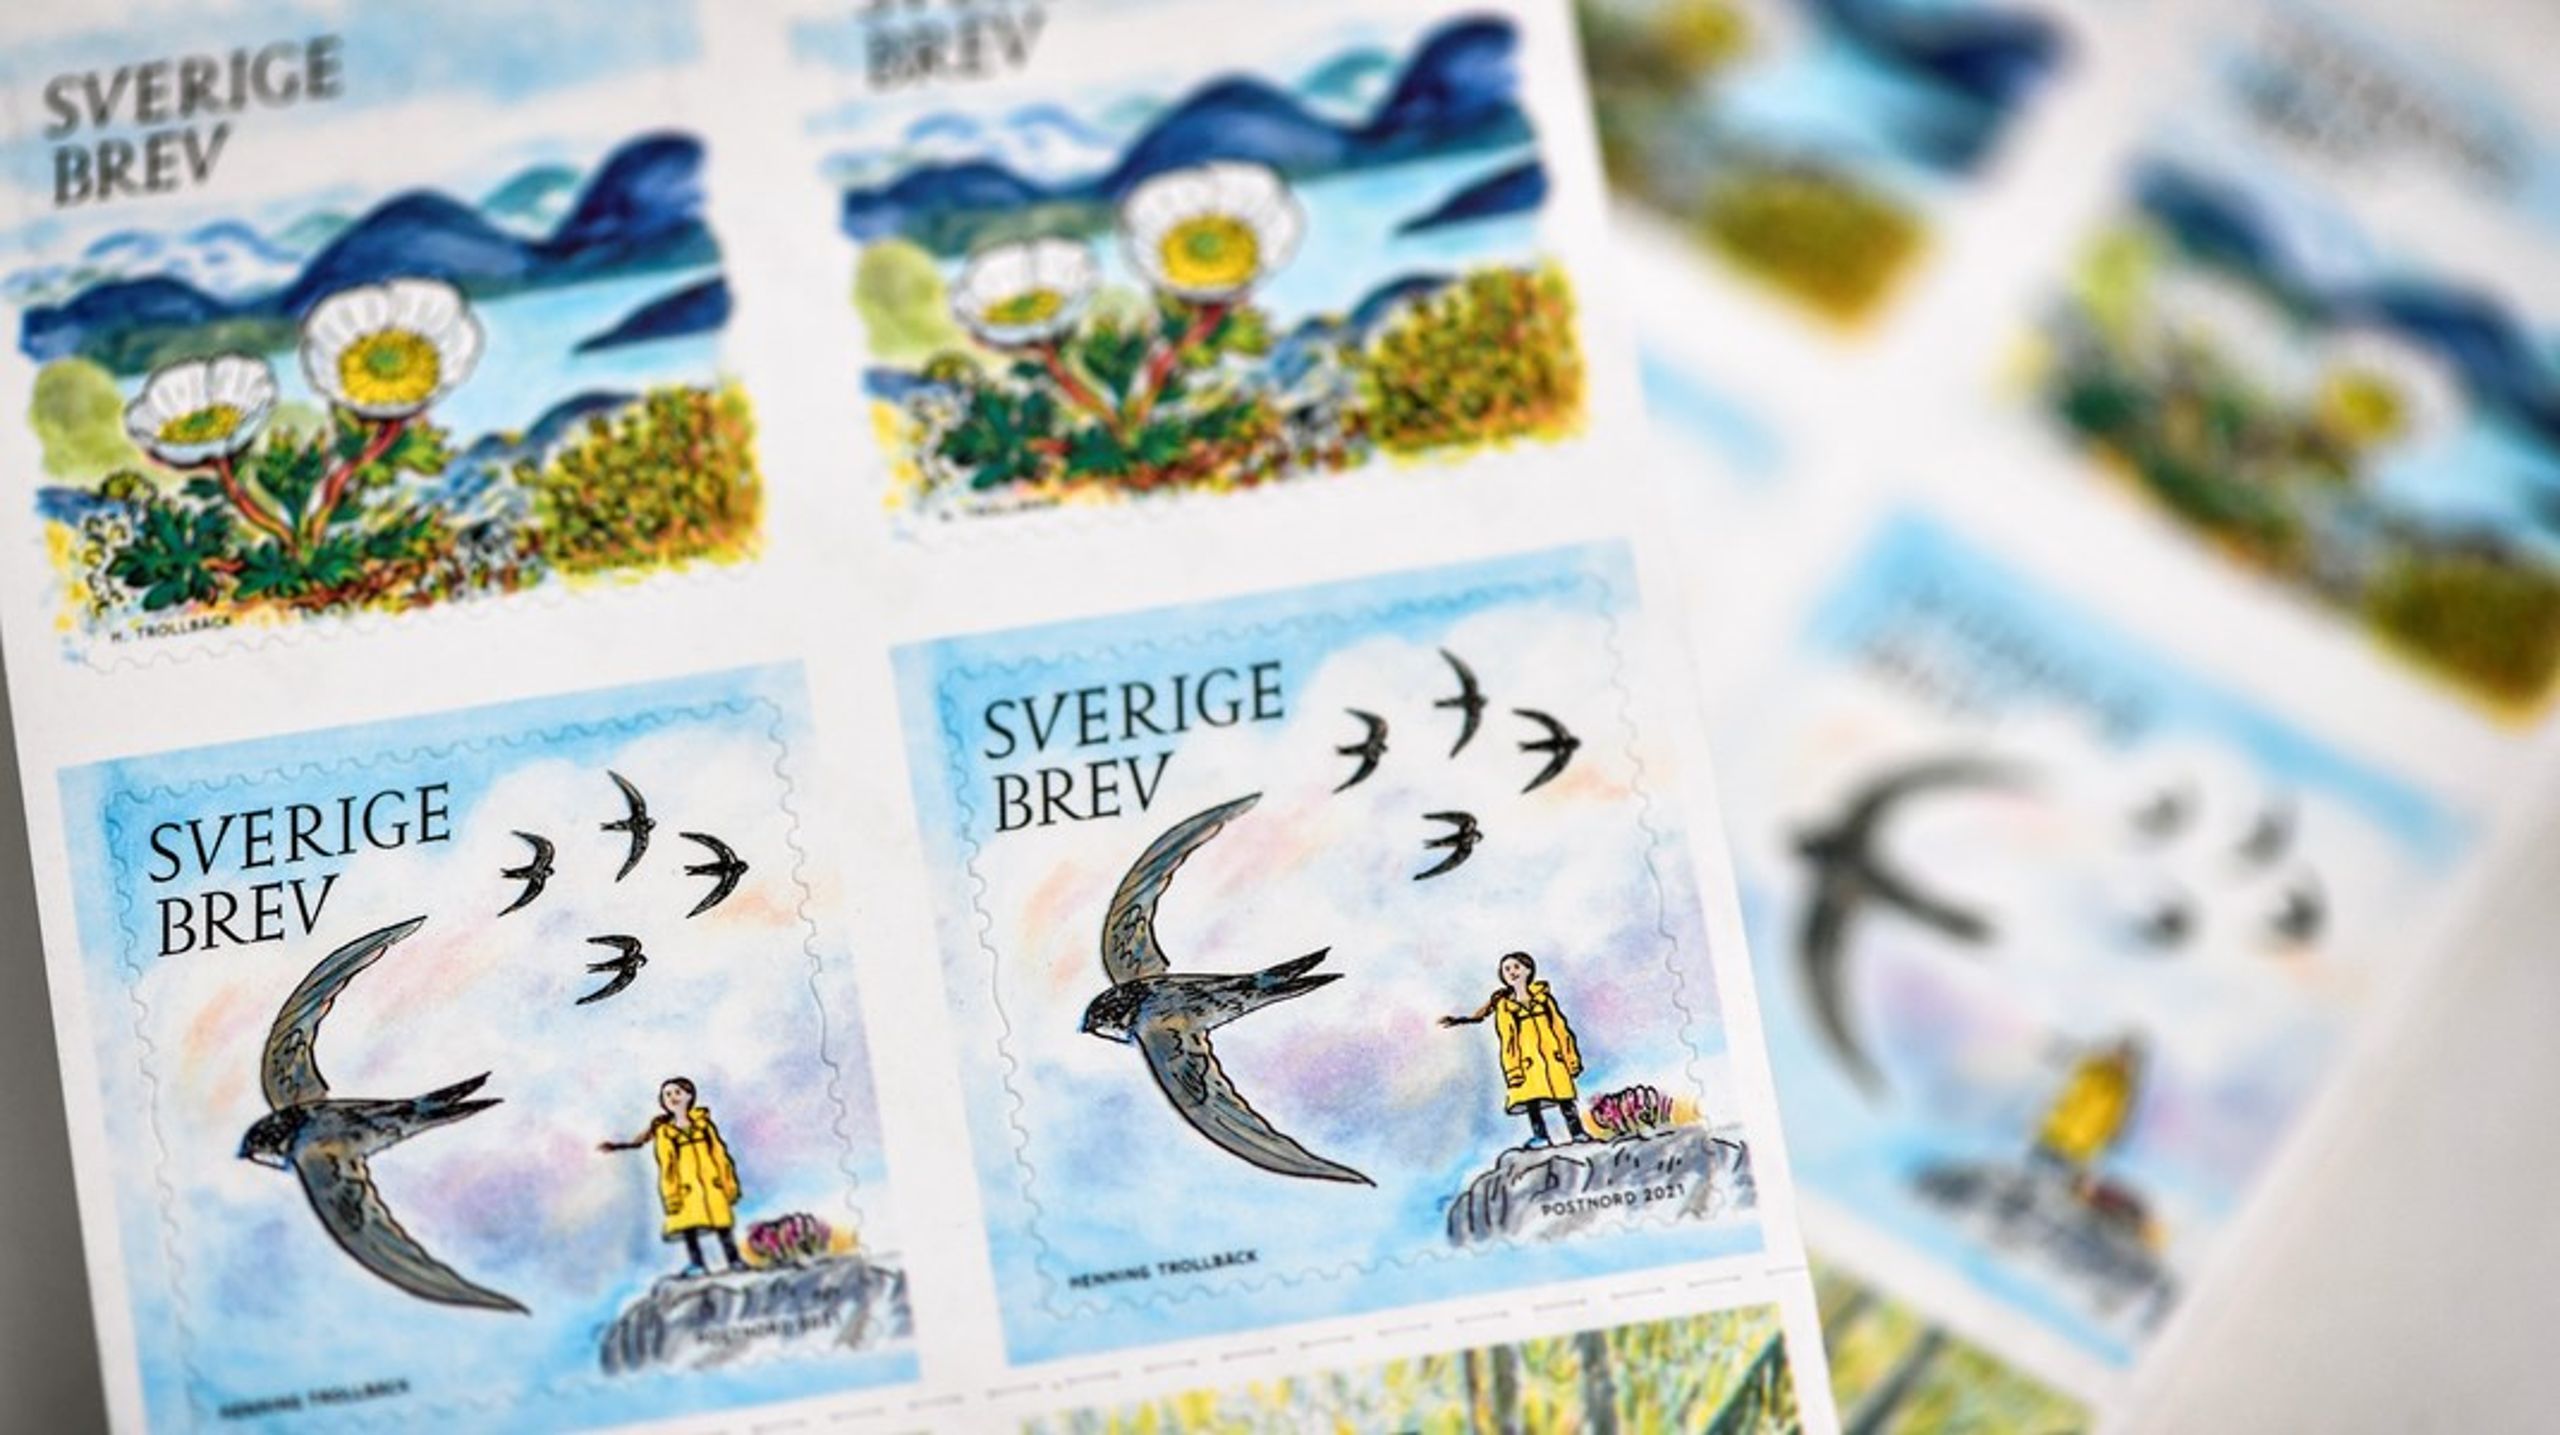 Årets första Sverigefrimärken, illustrerade av Henning Trollbäck, har temat Värdefull natur och fokuserar på miljön och de miljömål som Sveriges riksdag har satt upp för att bevara Sveriges natur.